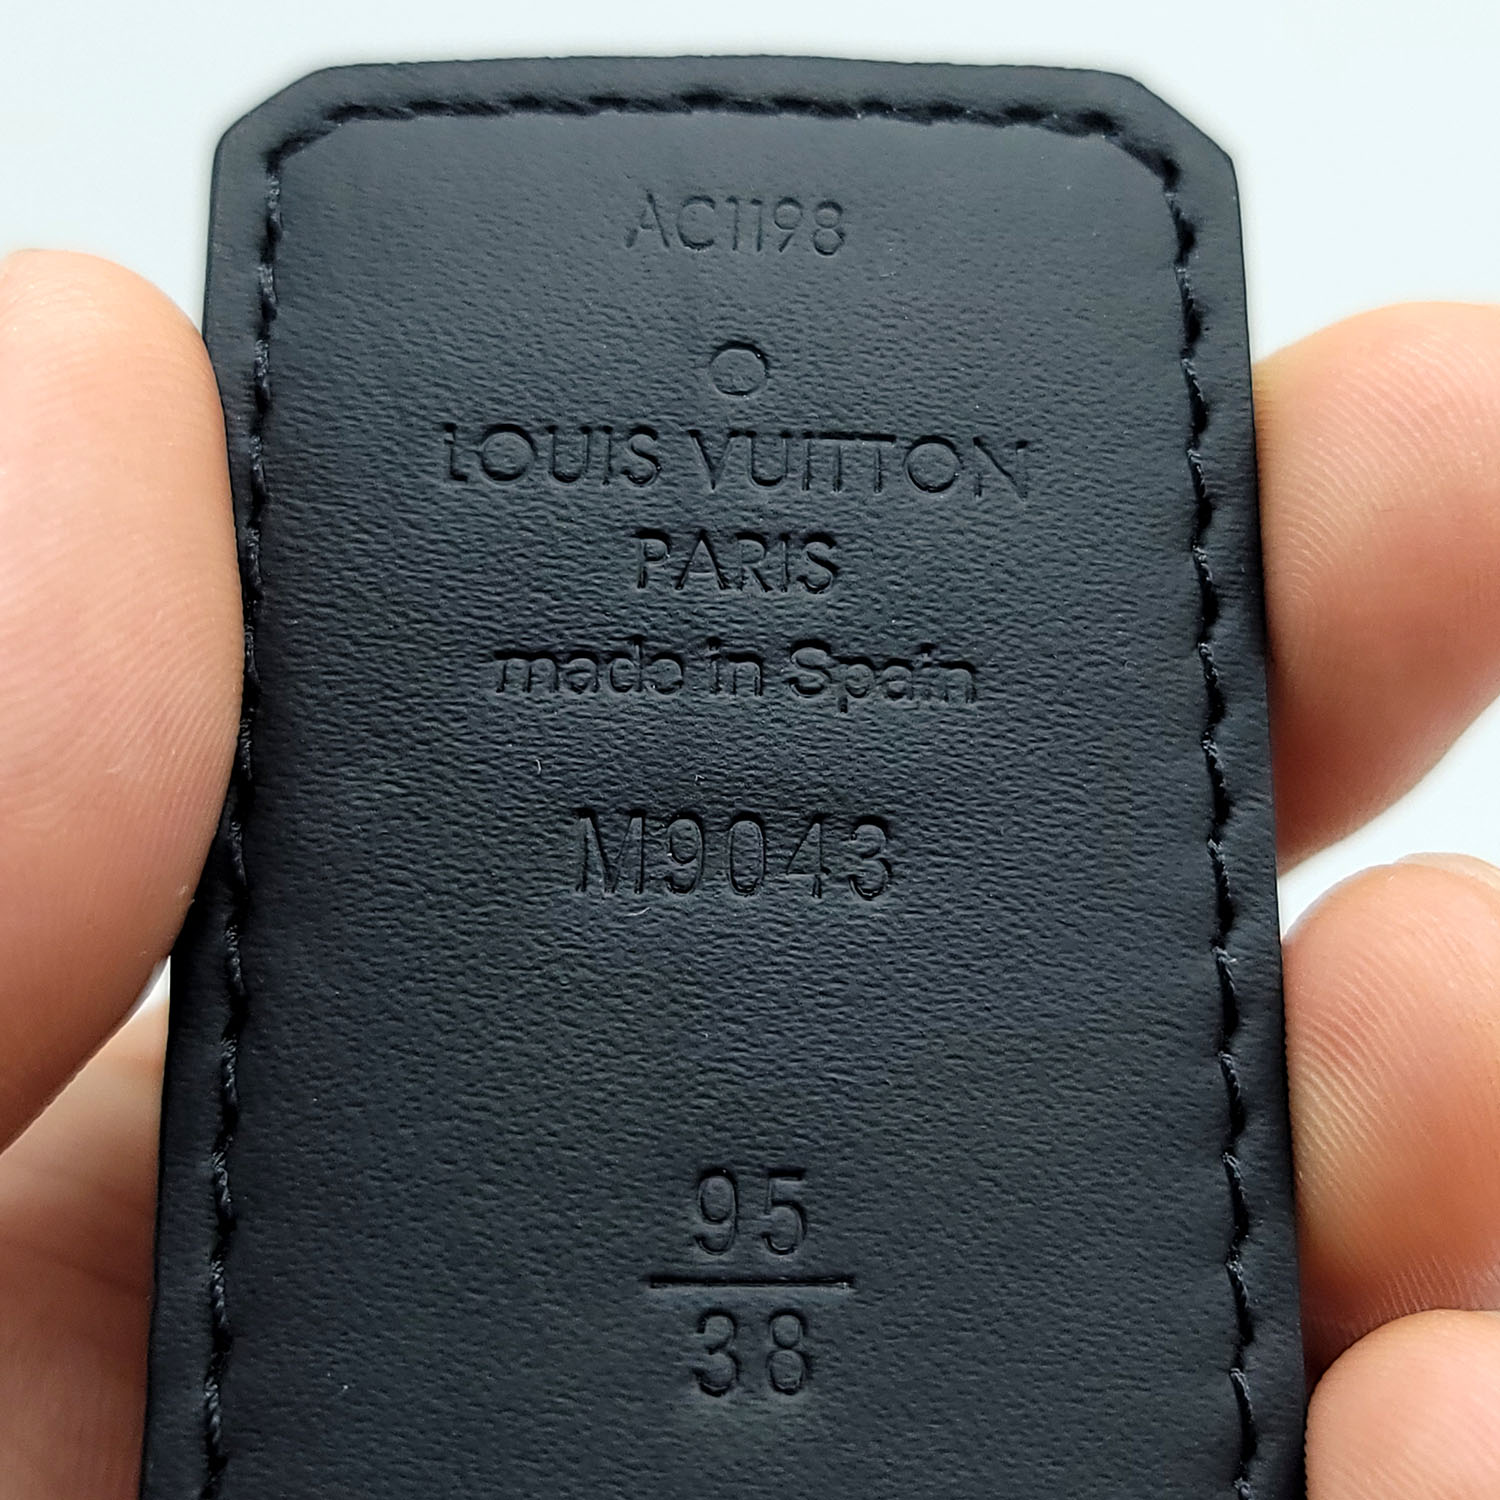 Louis Vuitton Monogram Canvas Square Belt Size 95/38 - Yoogi's Closet